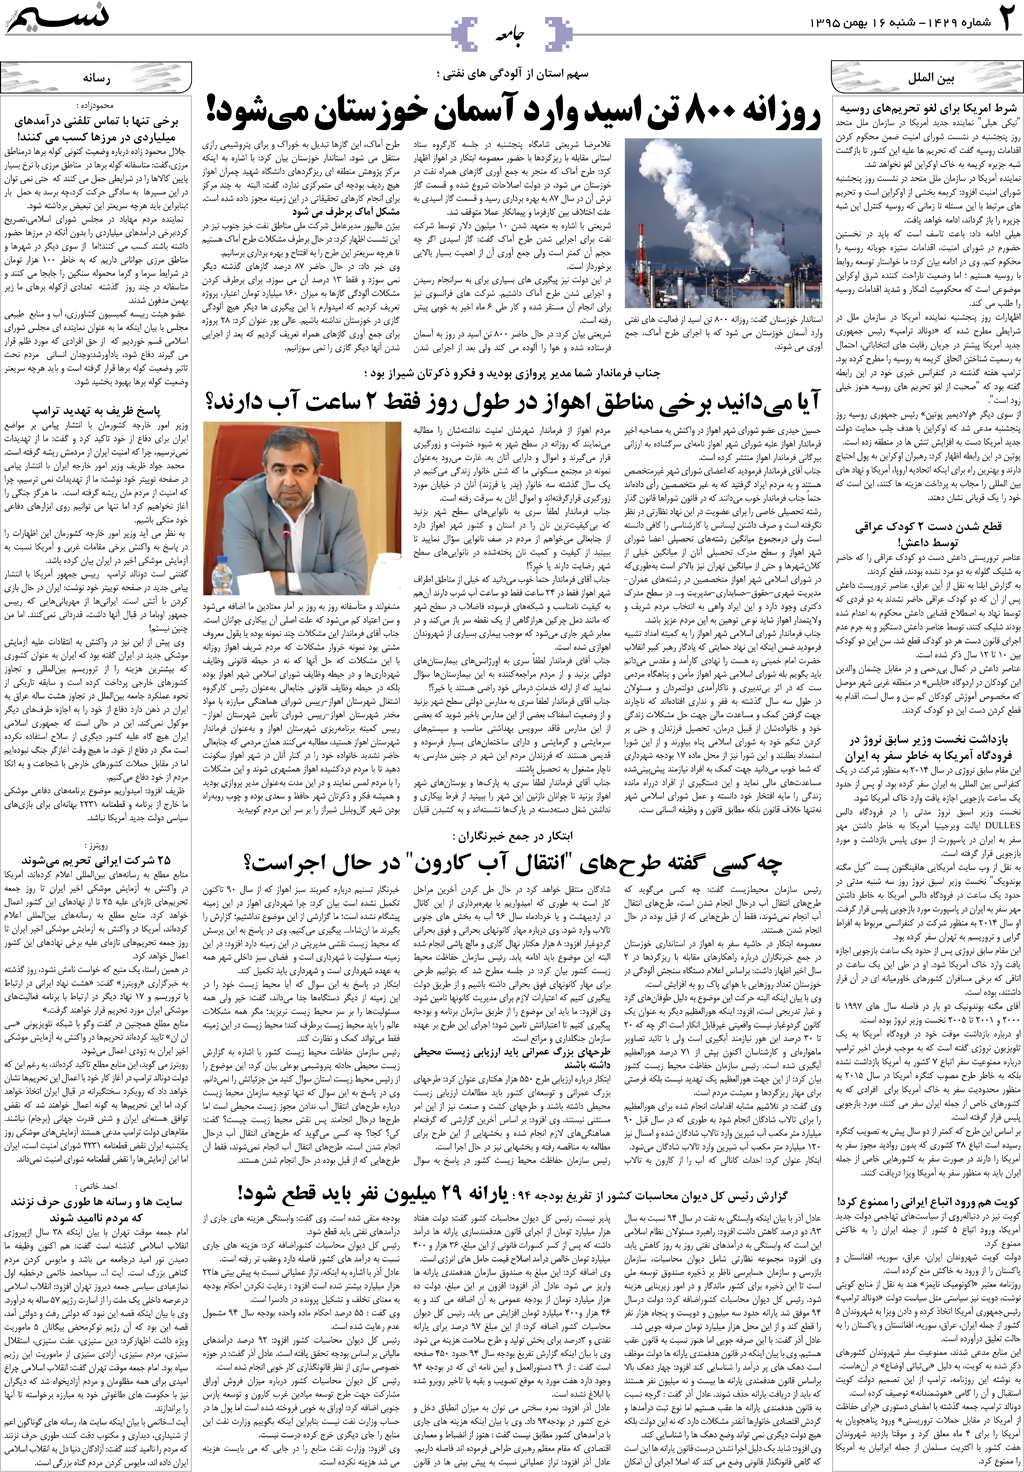 صفحه جامعه روزنامه نسیم شماره 1429